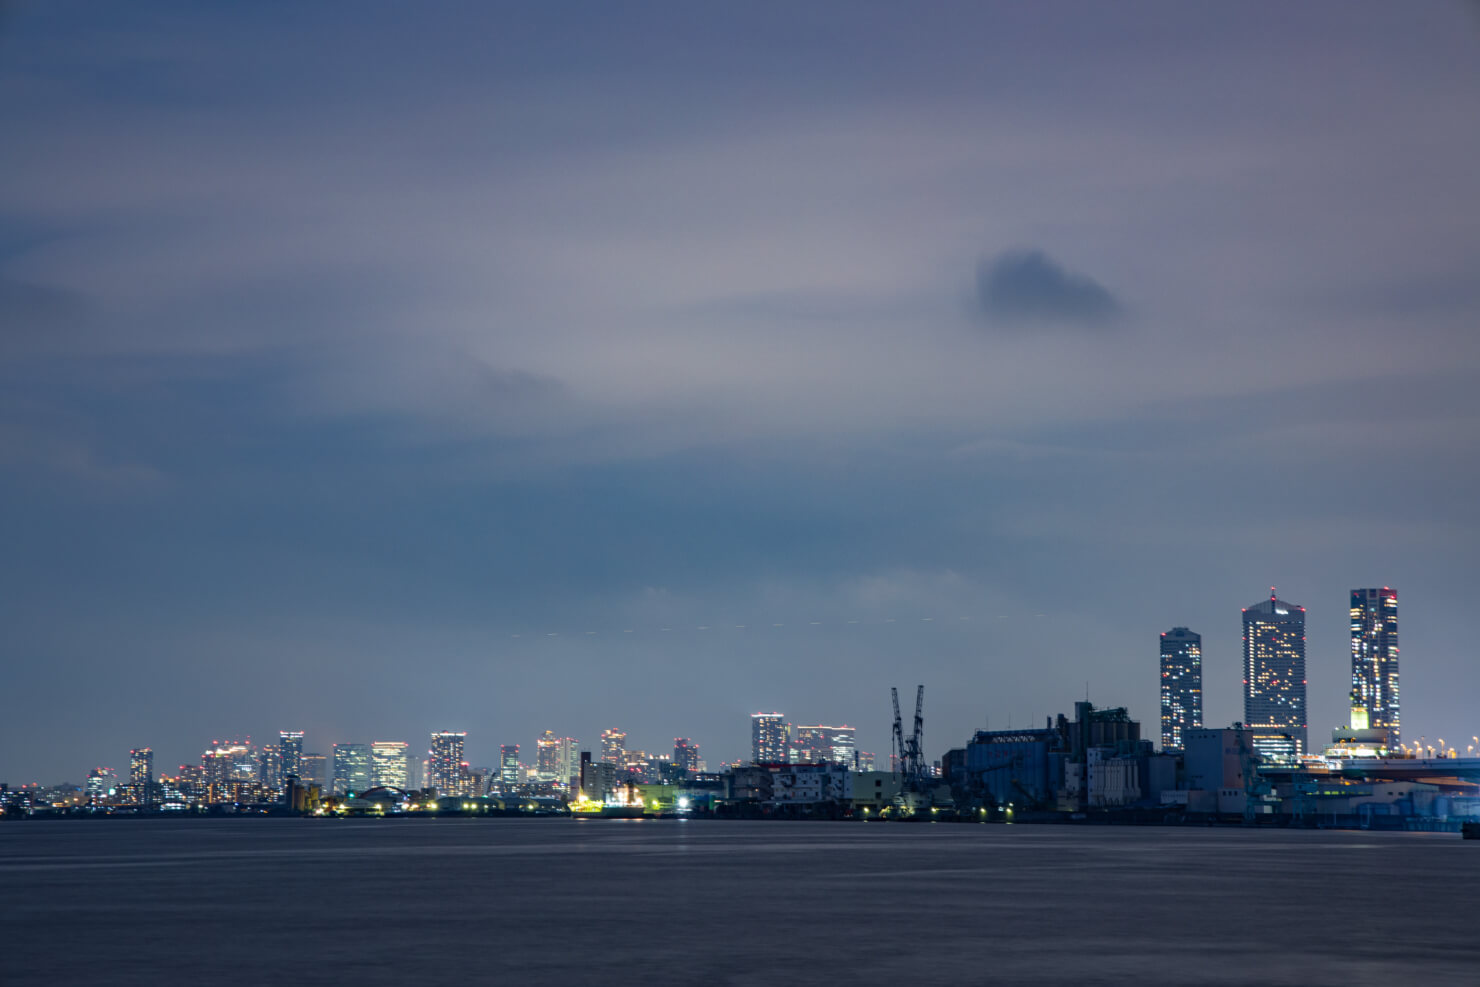 夜景撮影記 天保山公園から見た大阪の高層ビル群 都市と夜景